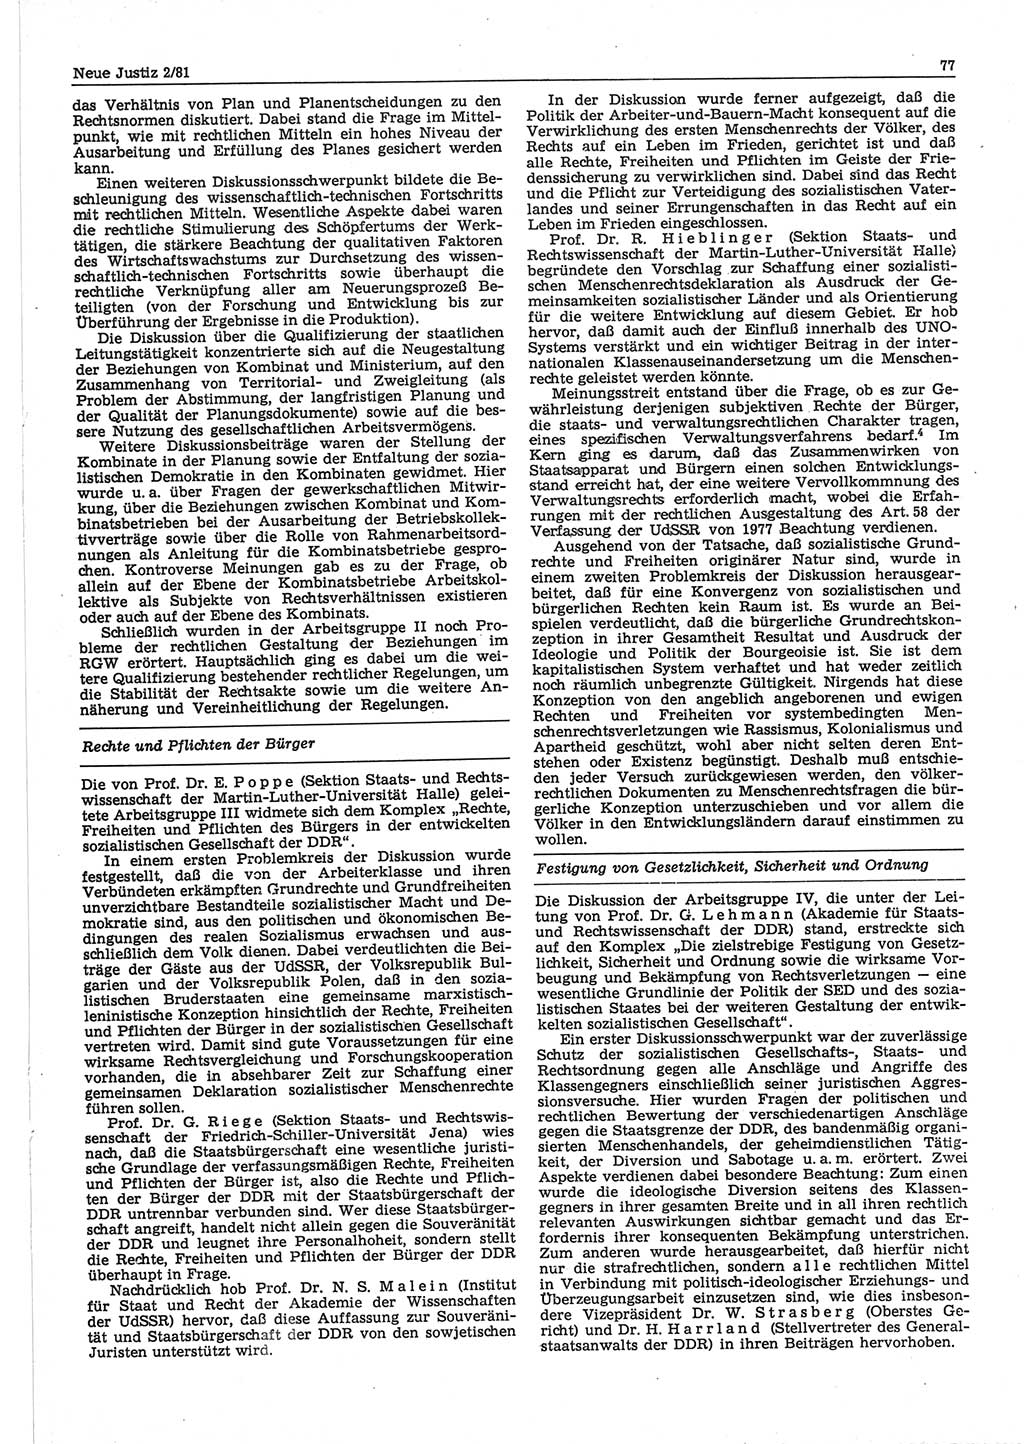 Neue Justiz (NJ), Zeitschrift für sozialistisches Recht und Gesetzlichkeit [Deutsche Demokratische Republik (DDR)], 35. Jahrgang 1981, Seite 77 (NJ DDR 1981, S. 77)